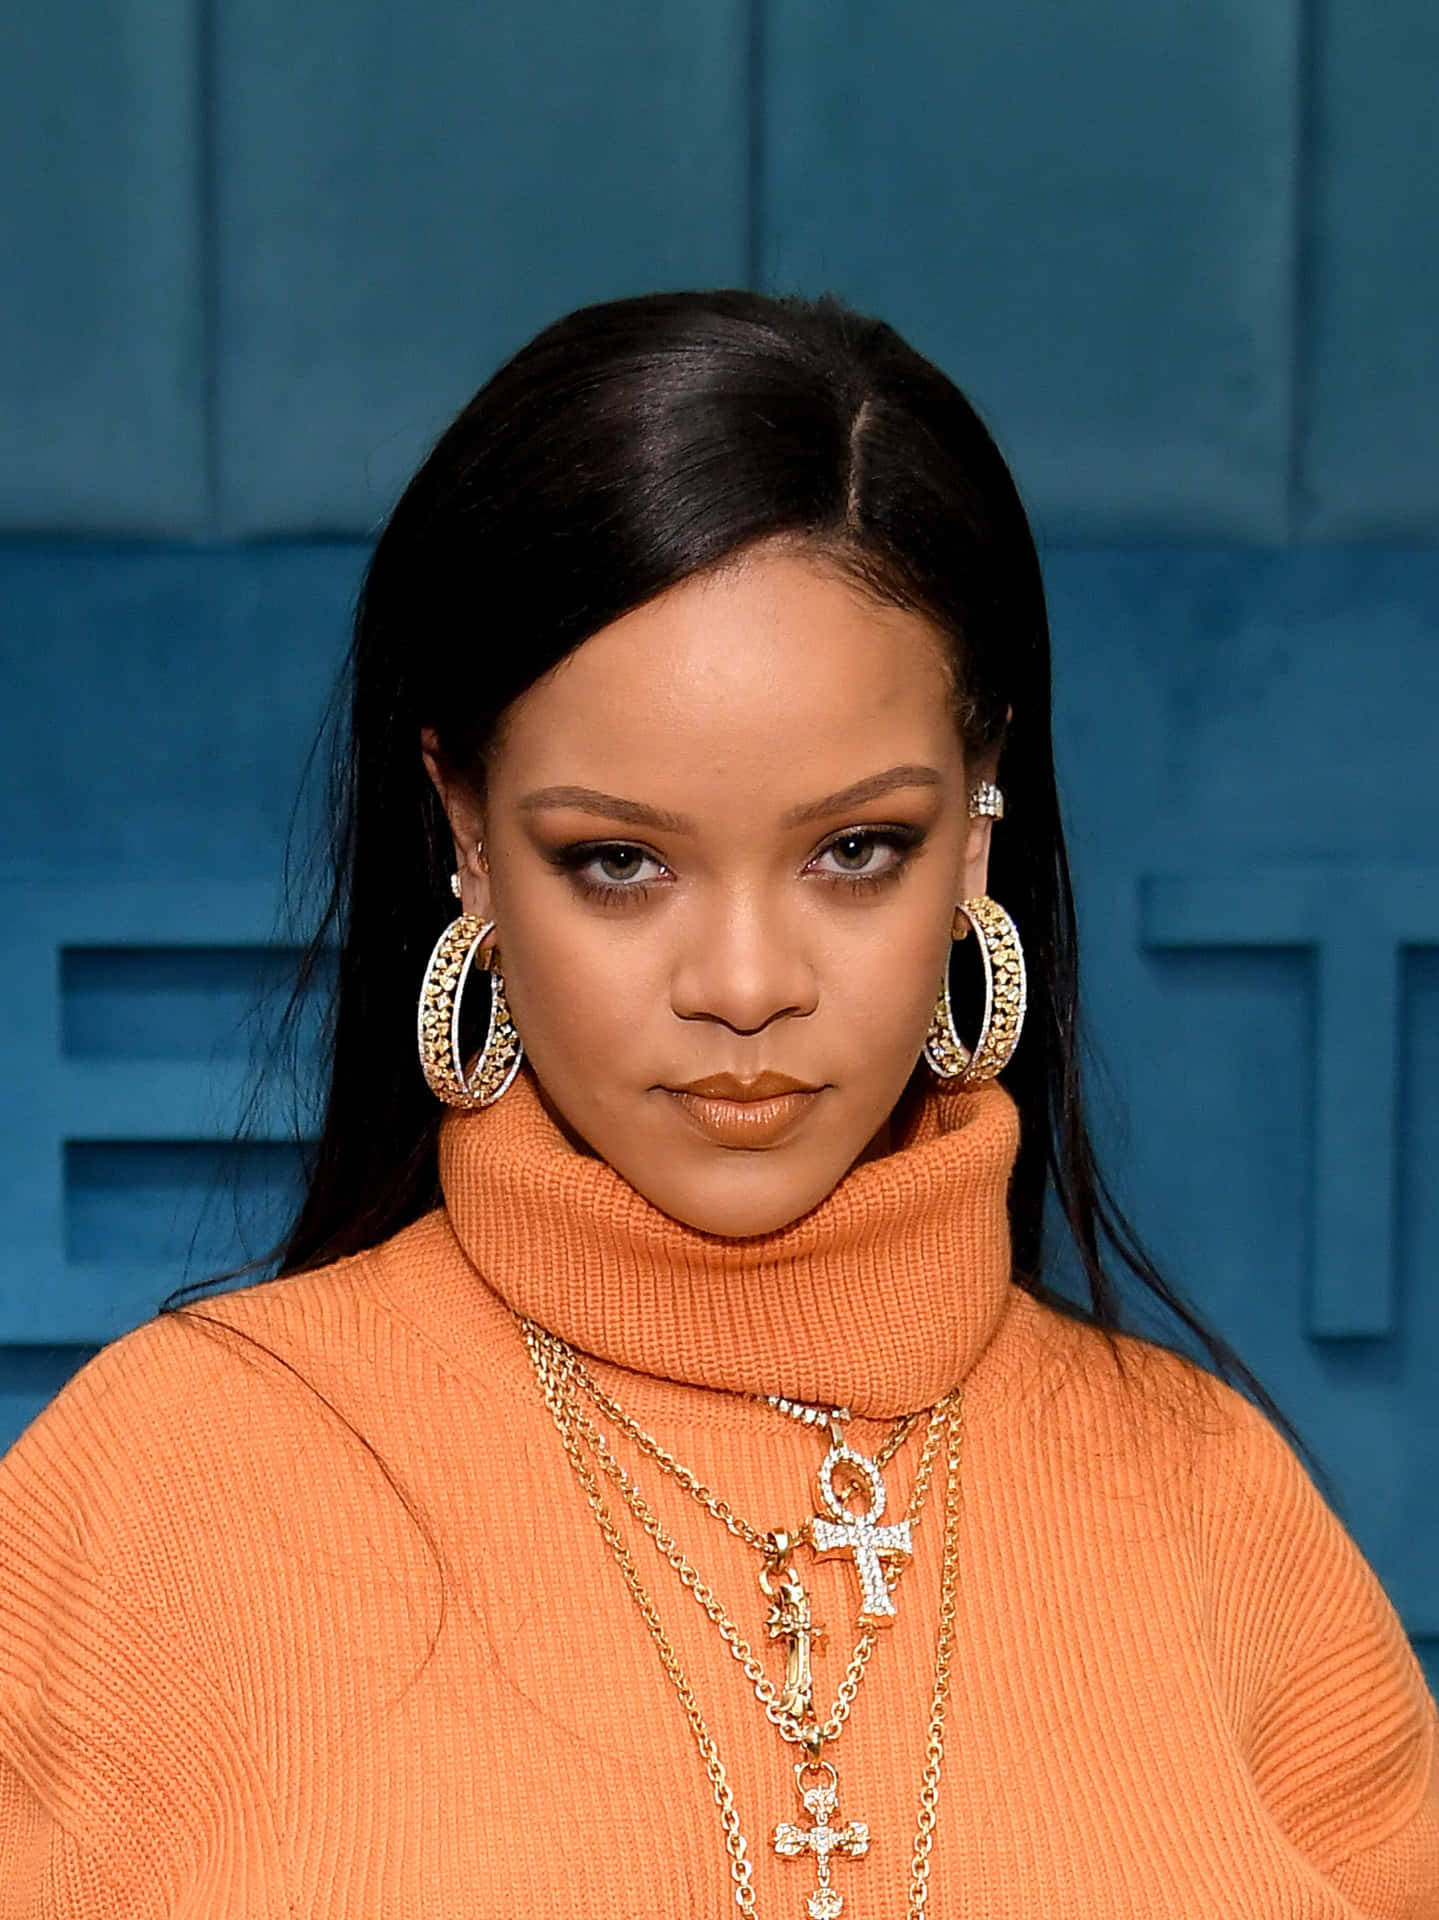 Kändisbildpå Rihanna.